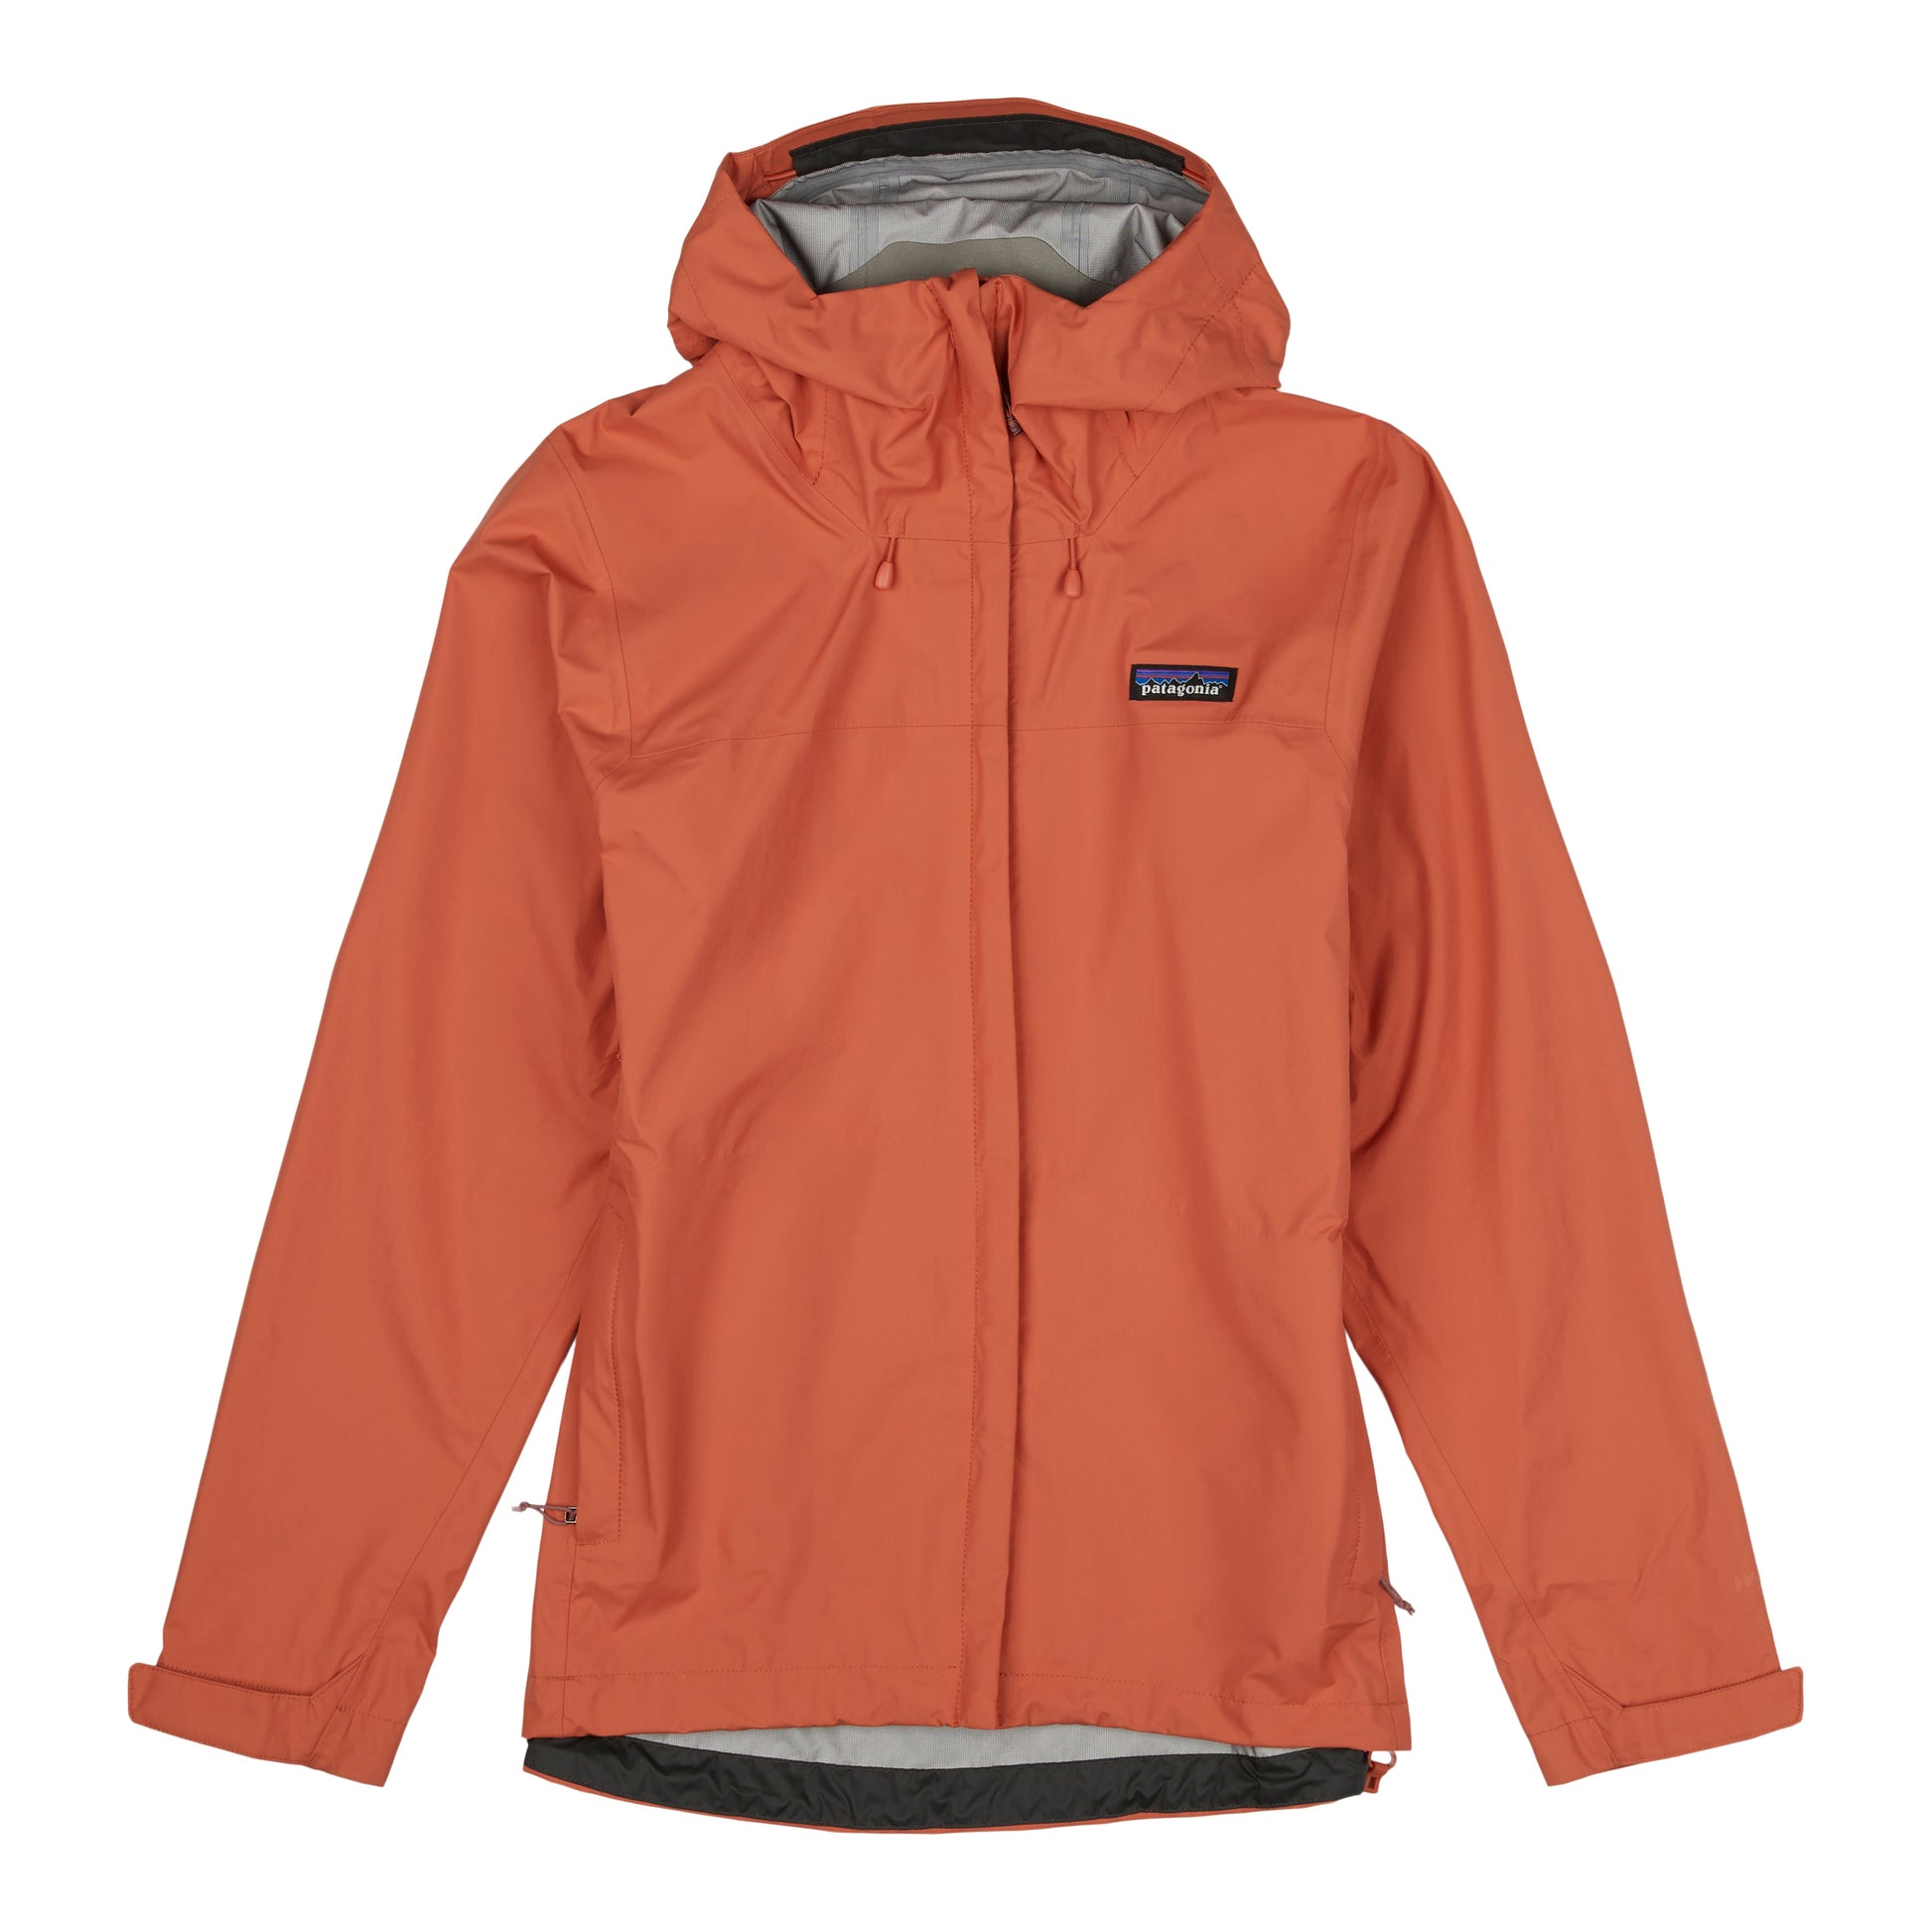 Patagonia Torrentshell 3L Jacket - Waterproof jacket Women's